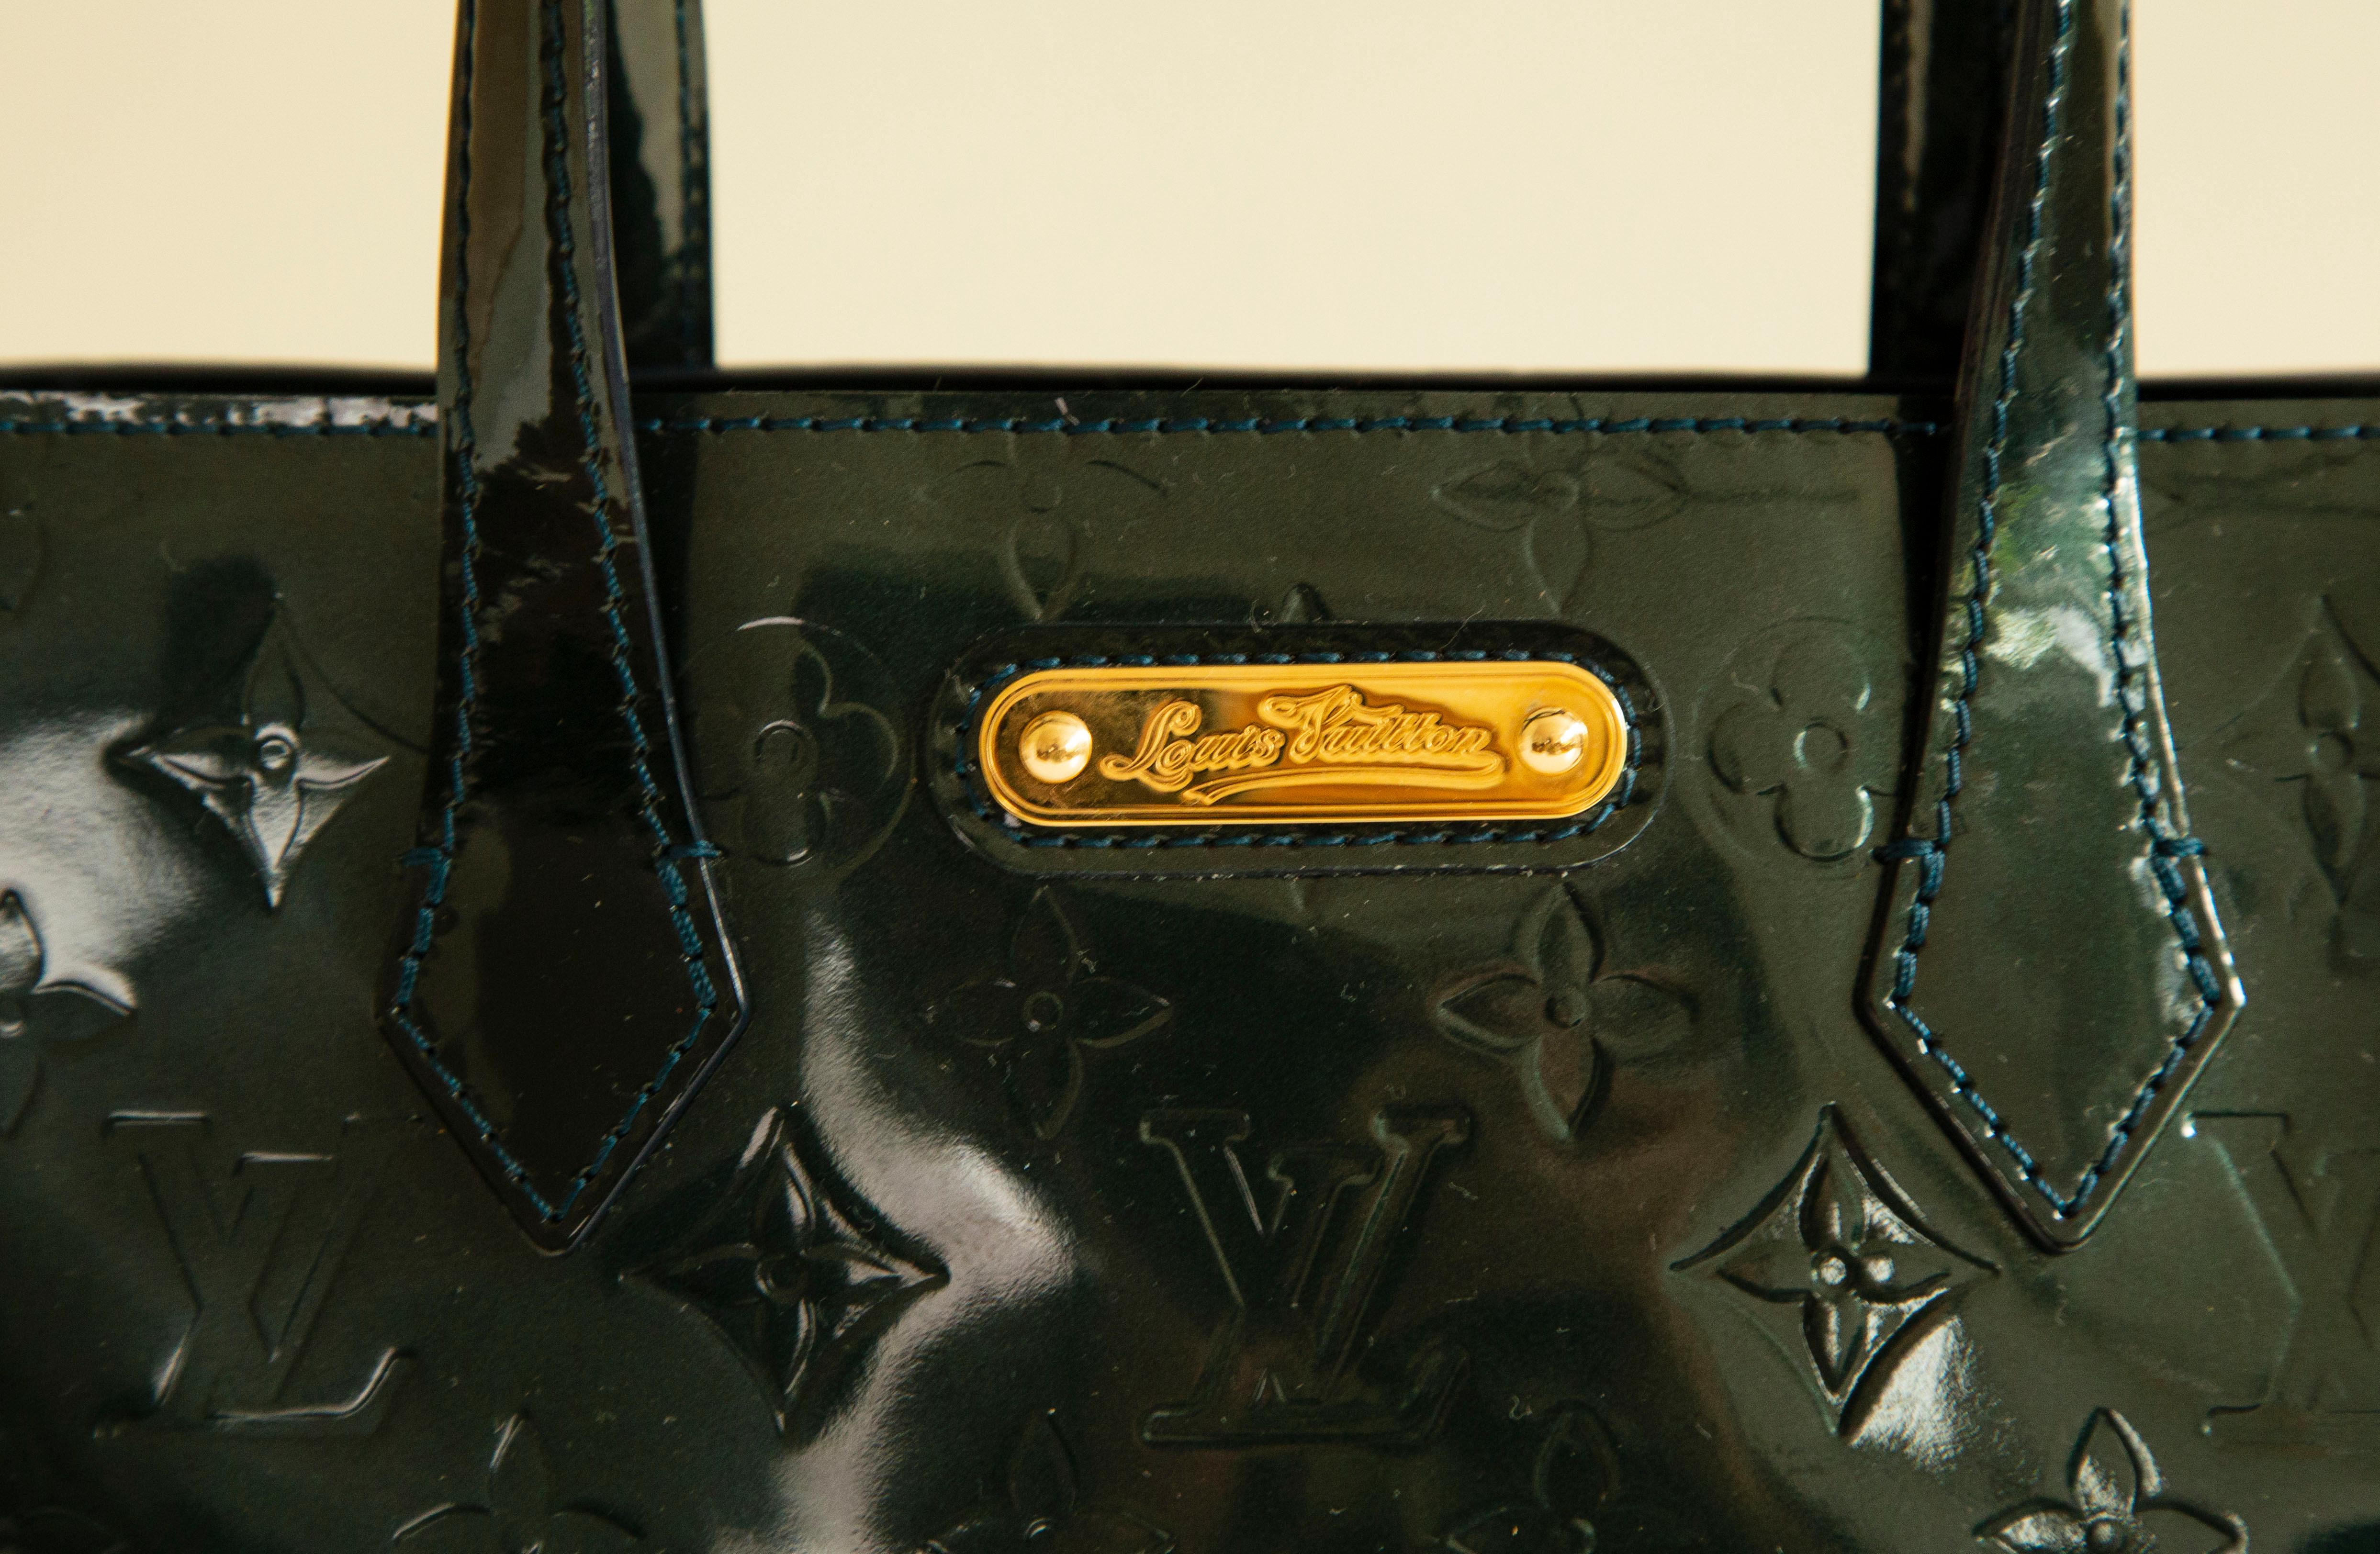 Sac fourre-tout Louis Vuitton Wilshire PM réalisé en cuir Monogram Vernis Bleu Nuit (couleur vert/bleu foncé) et conçu pour Louis Vuitton par Marc Jacobs en 1998. L'intérieur est doublé d'un tissu et, à côté du compartiment principal, il comporte